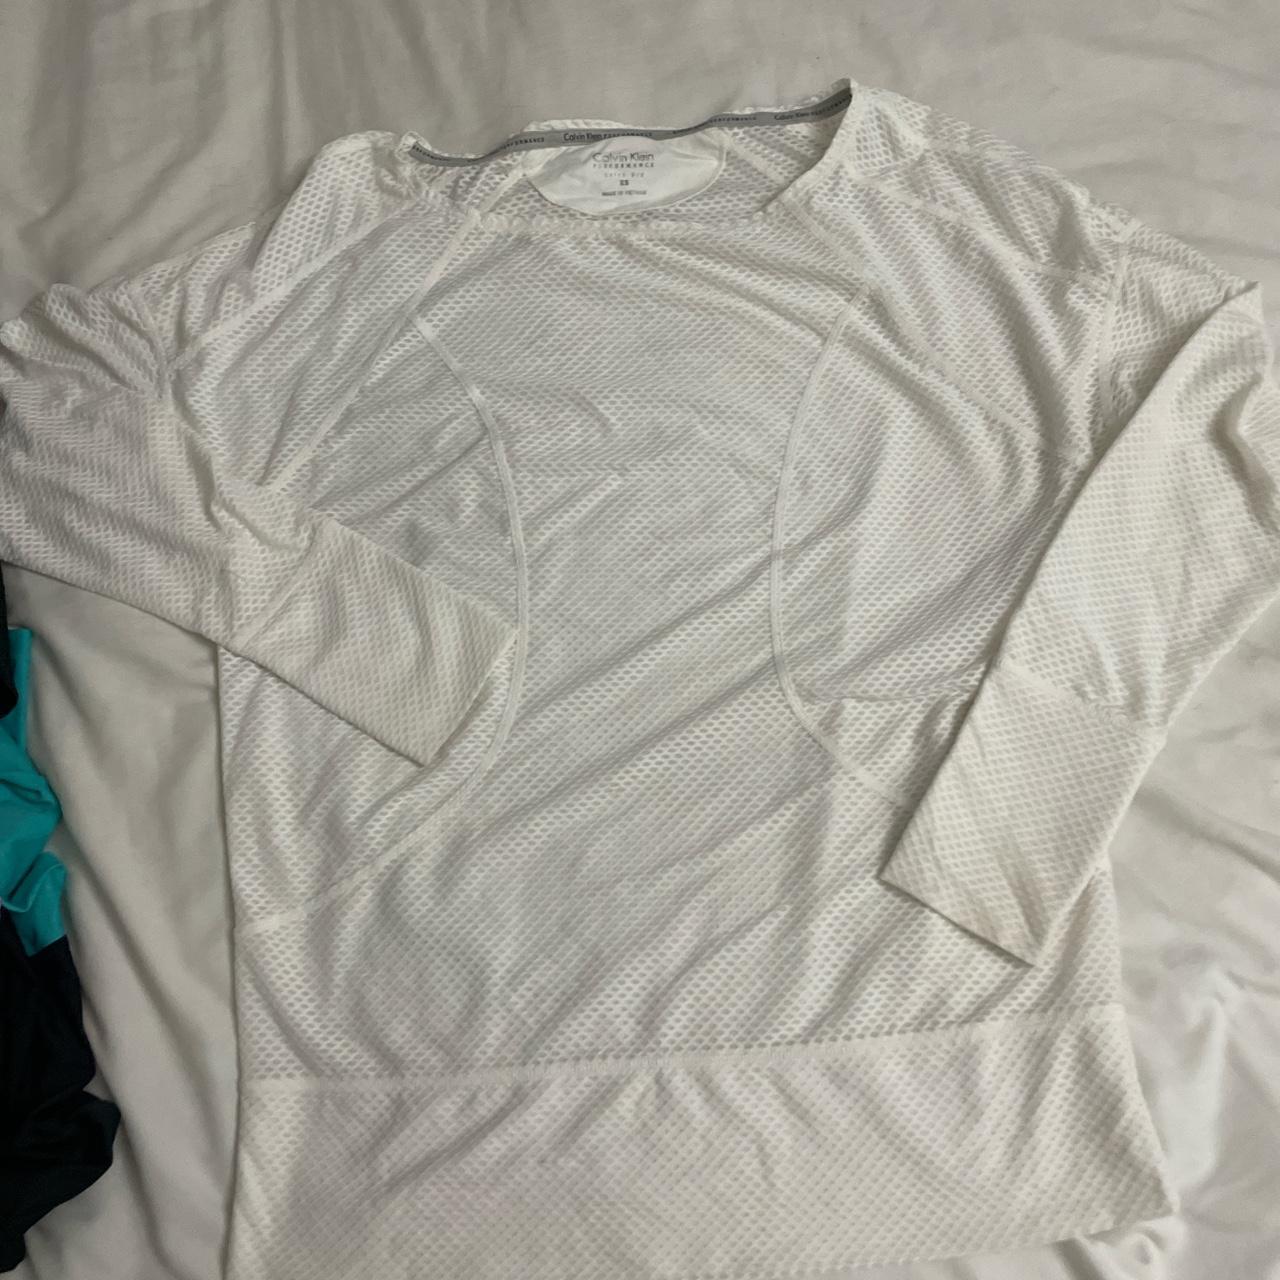 Calvin Klein Quick Dry Long sleeve XS workout shirt - Depop